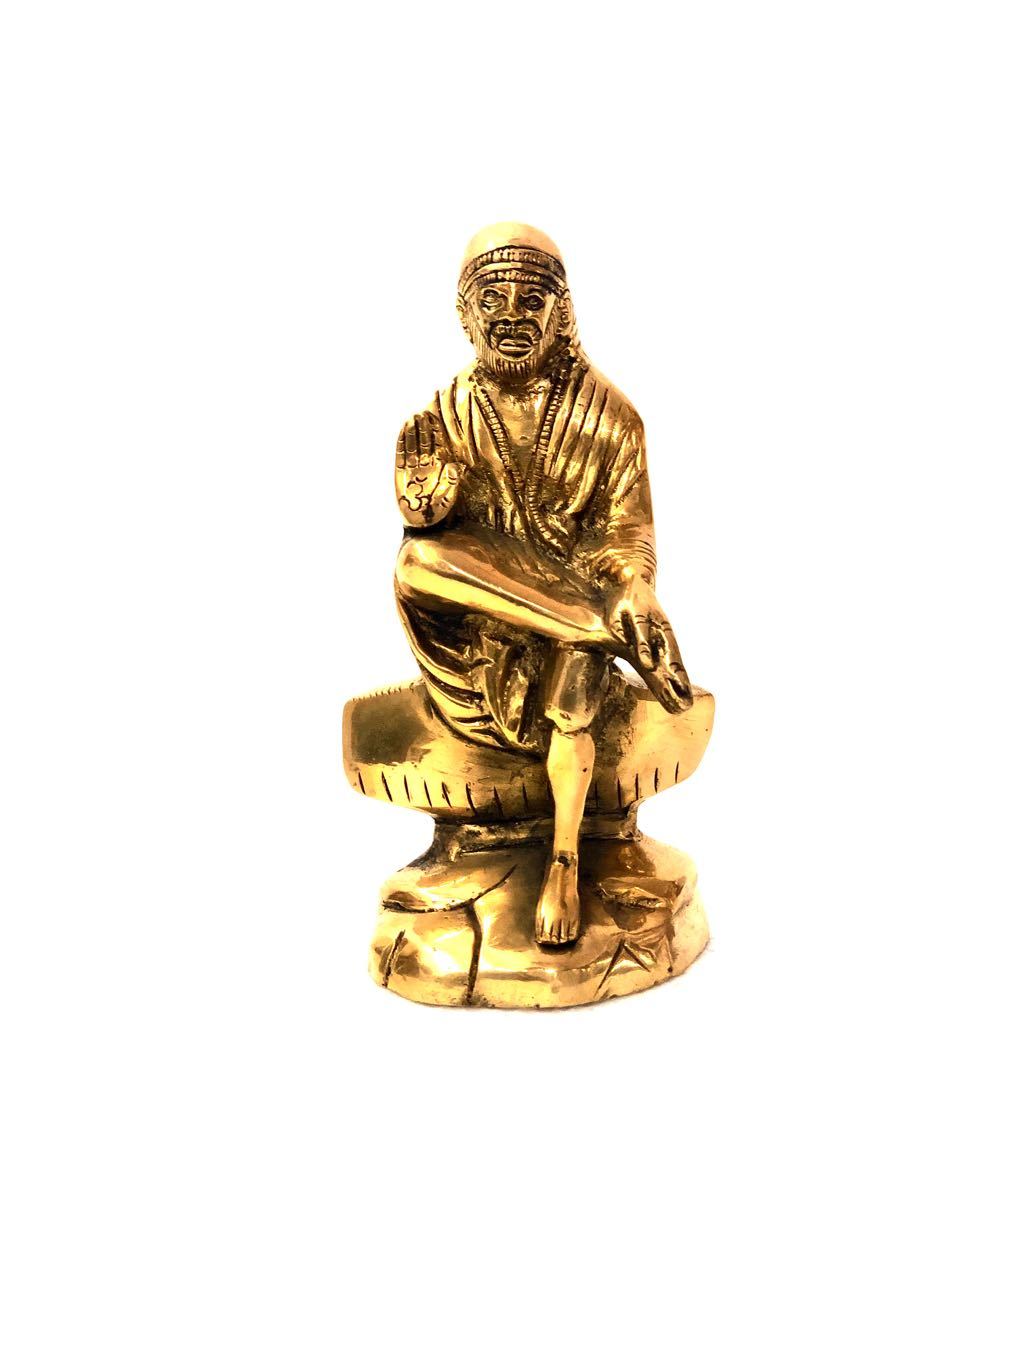 Sai Baba Of Shirdi 'Indian Spiritual Master' Brass Idol Tamrapatra - Tamrapatra